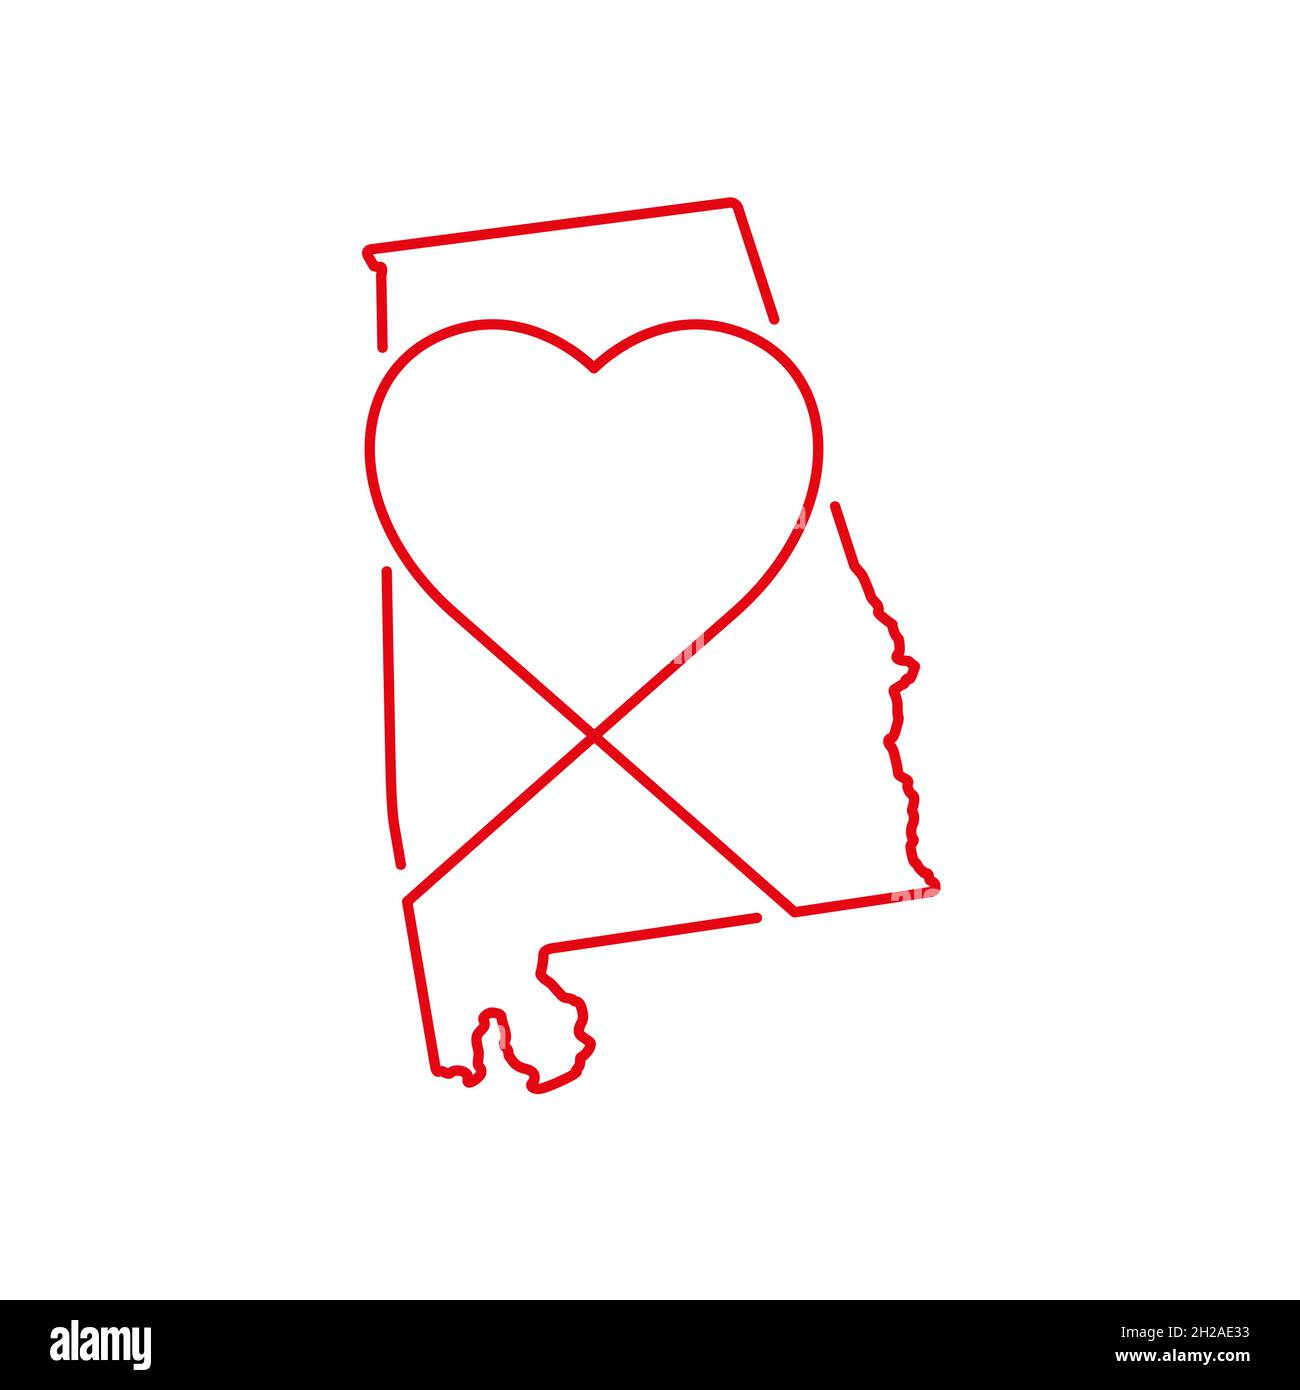 Carte avec contour rouge de l'État américain de l'Alabama et forme de cœur manuscrite.Dessin de ligne continue de signe de maison patriotique.Un amour pour une petite patrie.T-shir Illustration de Vecteur